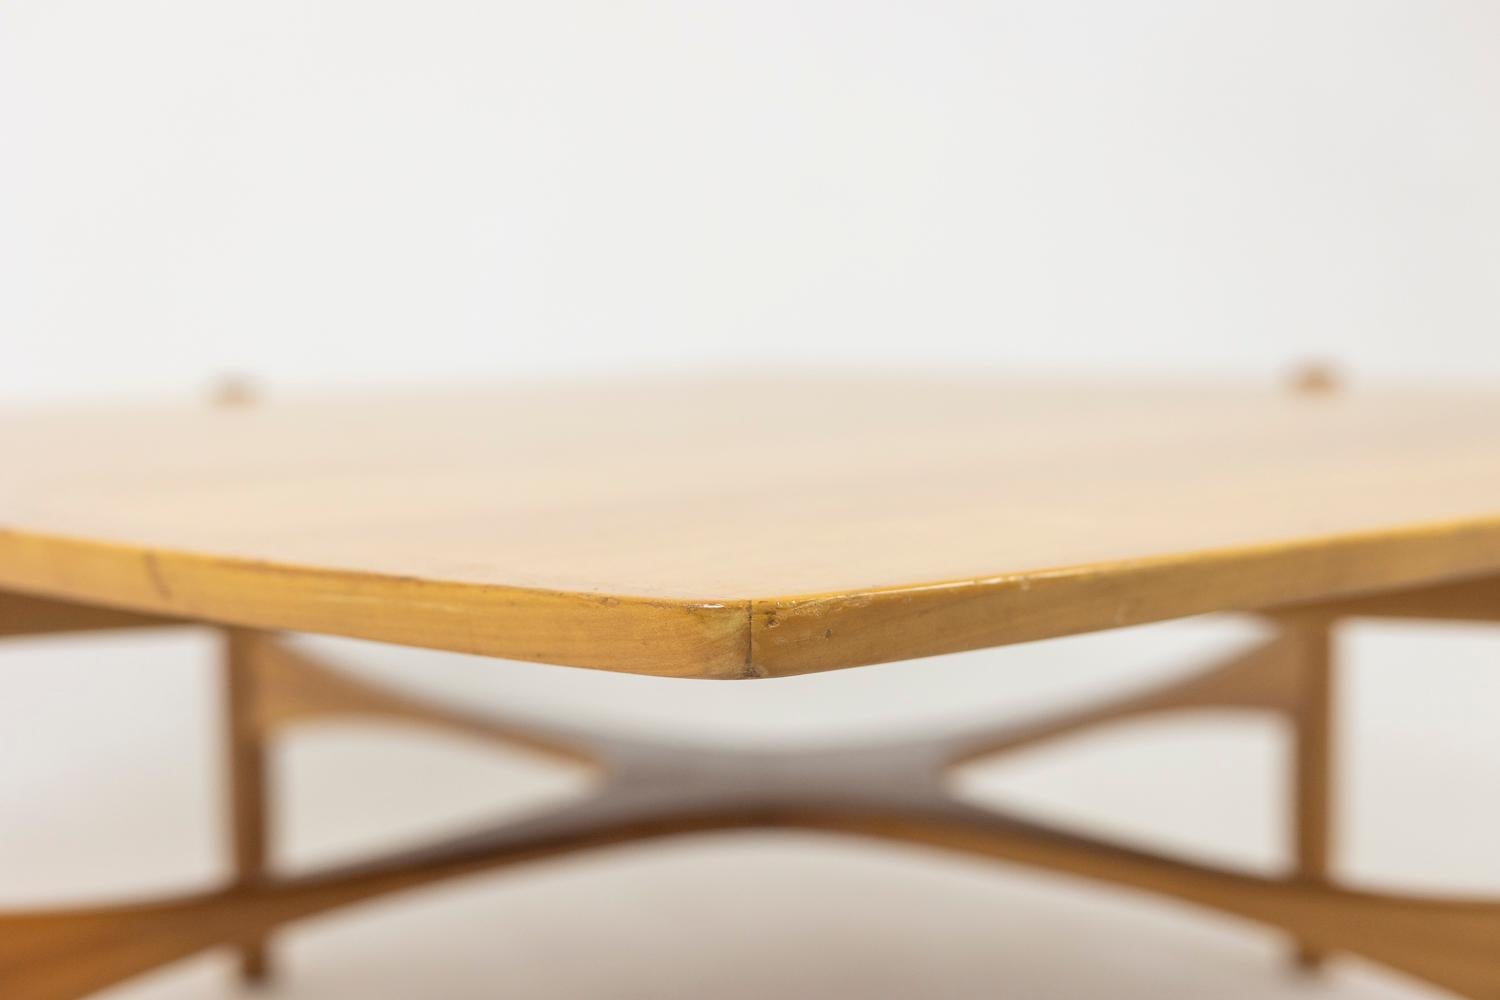 Table basse en merisier, de forme carrée.

Œuvre danoise réalisée dans les années 1970.